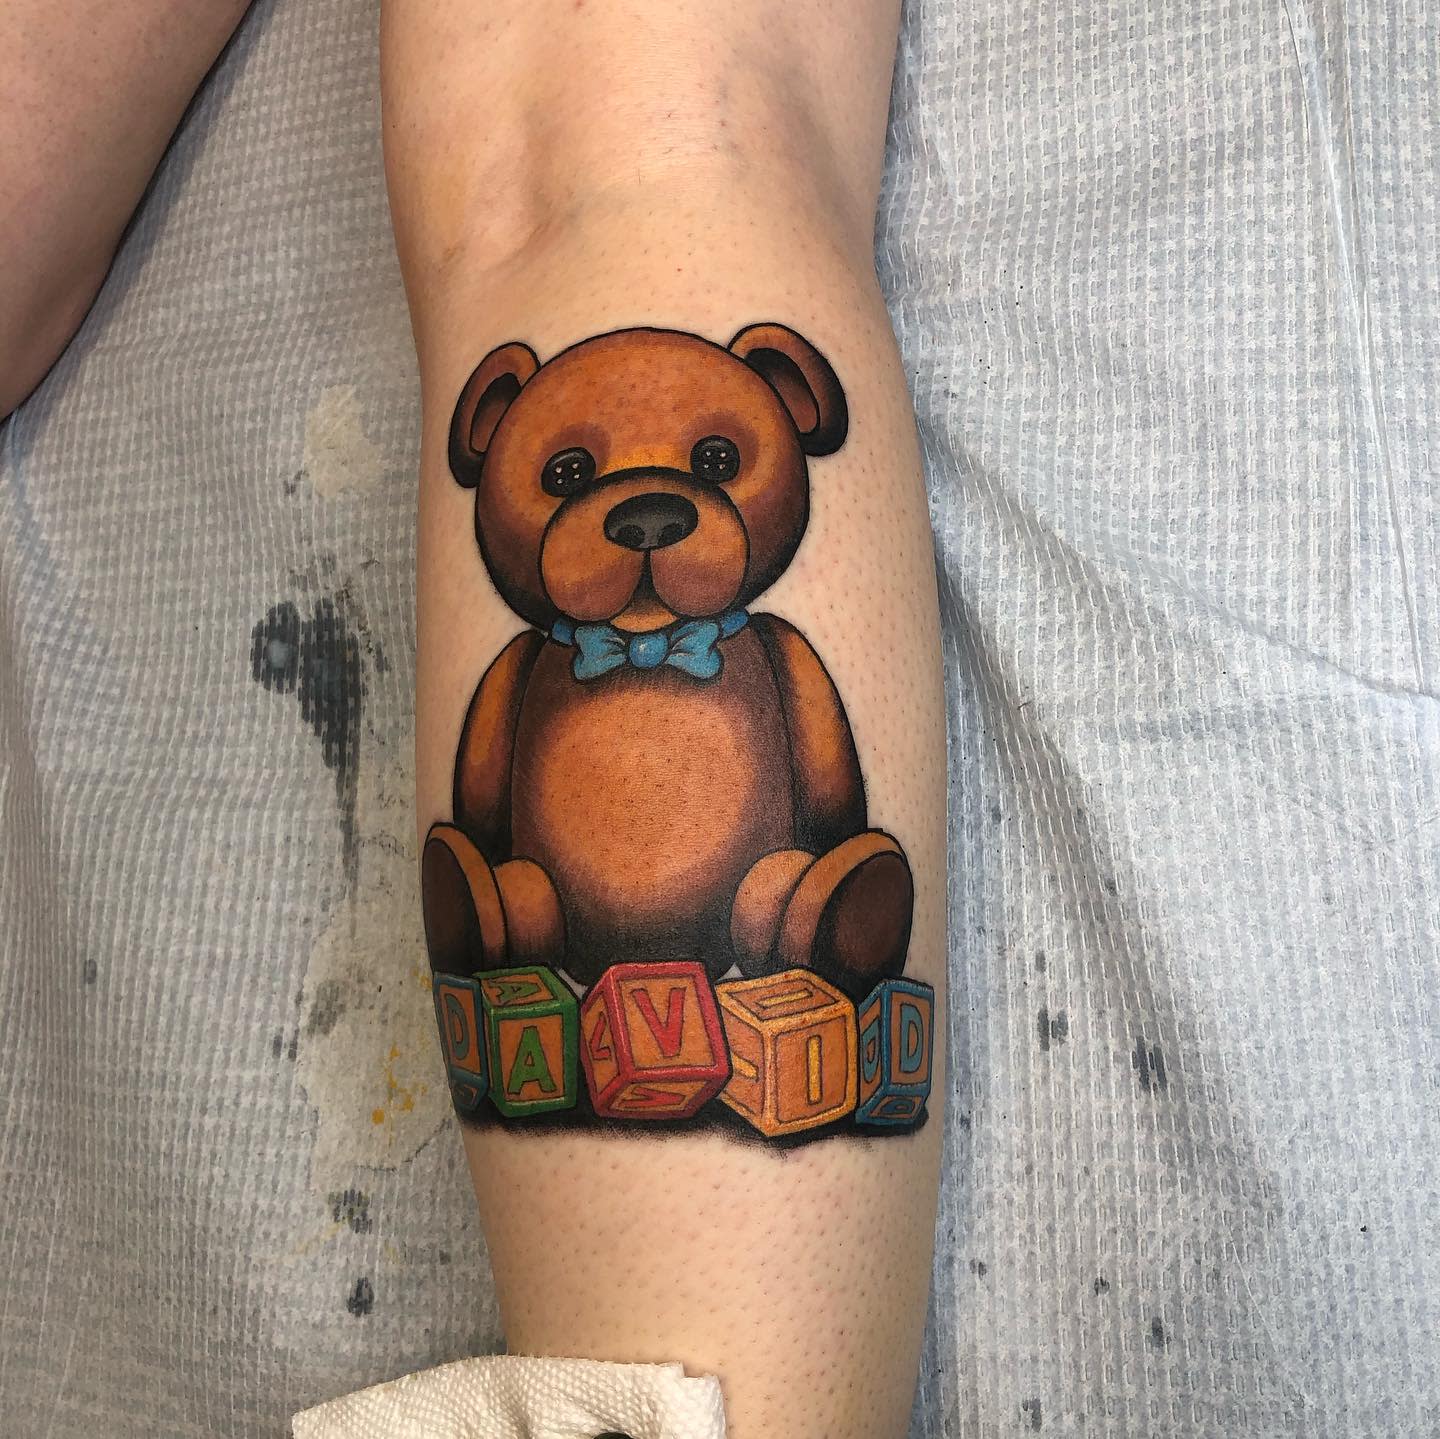 This realistic teddy bear tattoo tattoos tattooartist ink tattooed  inked tattooart tattoolife tattooing tattooink tattooist  Instagram